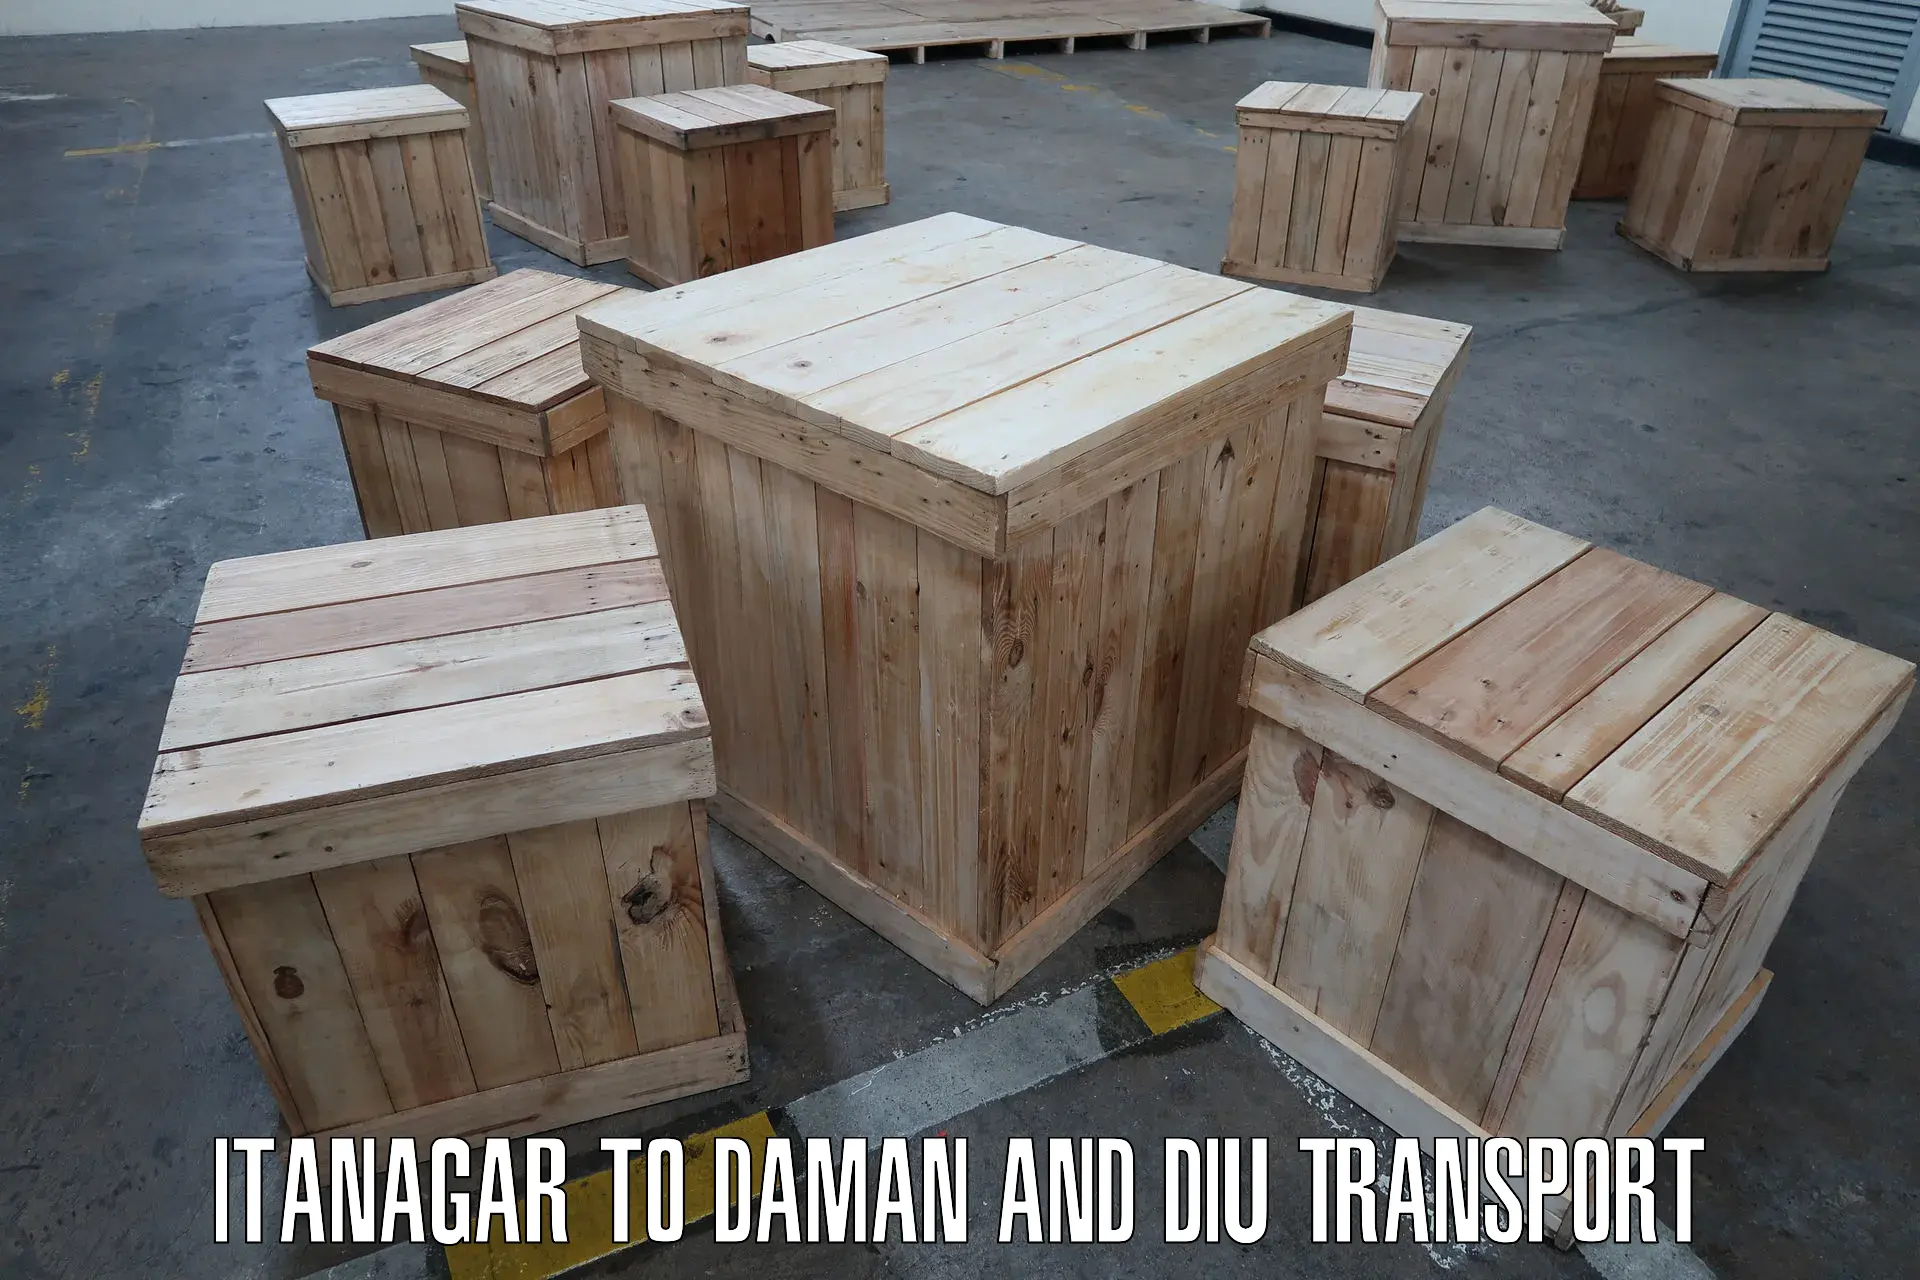 Door to door transport services Itanagar to Daman